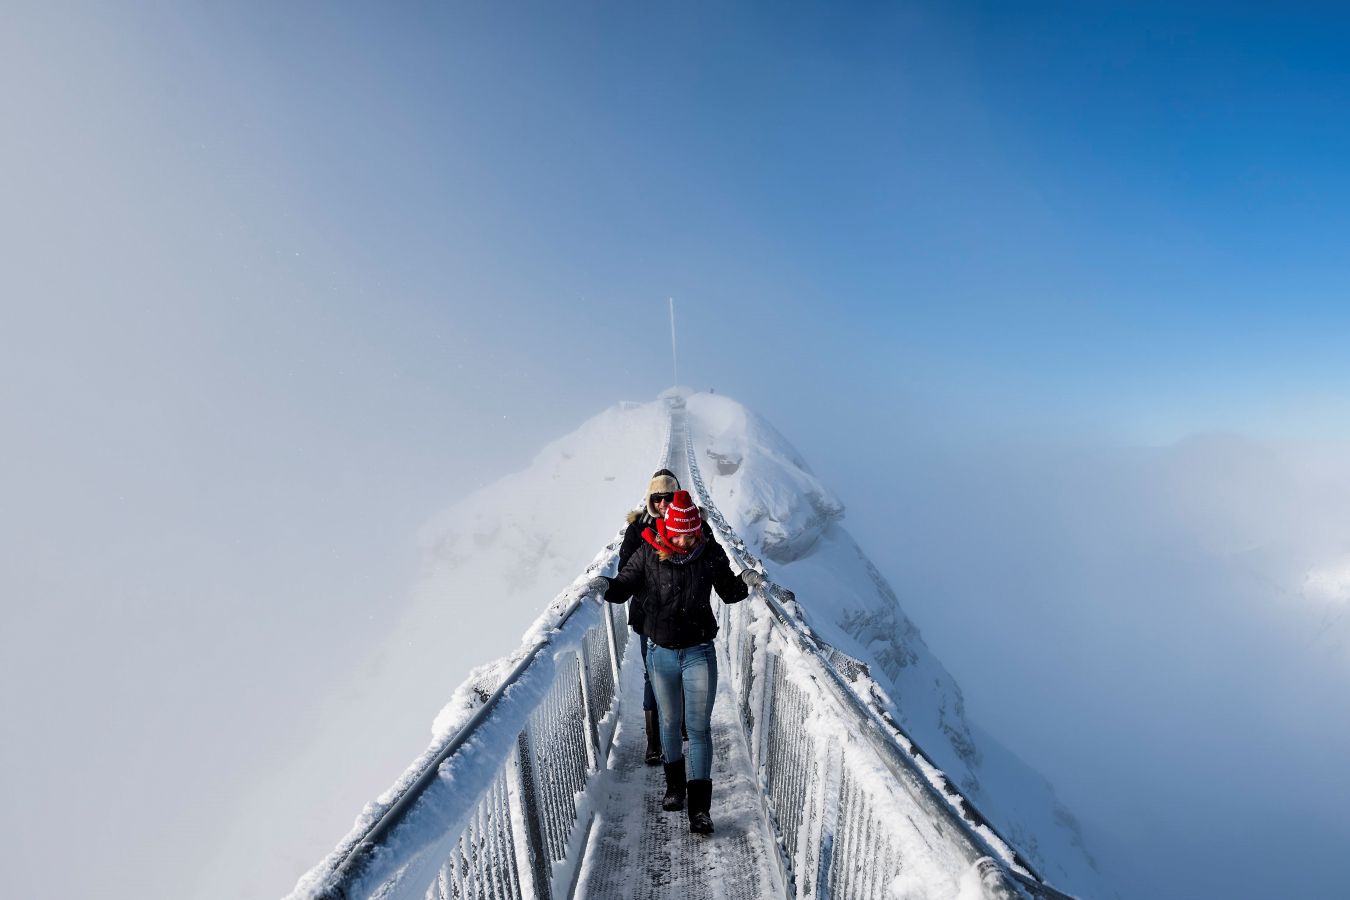 Peak Walk es un puente colgante peatonal que une dos montañas en el macizo de Diablerets en los Alpes suizos. Es el primer puente del mundo de este tipo y en pleno invierno presenta una estampa solo apta para valientes, o al menos, para quienes no sufran de vértigo